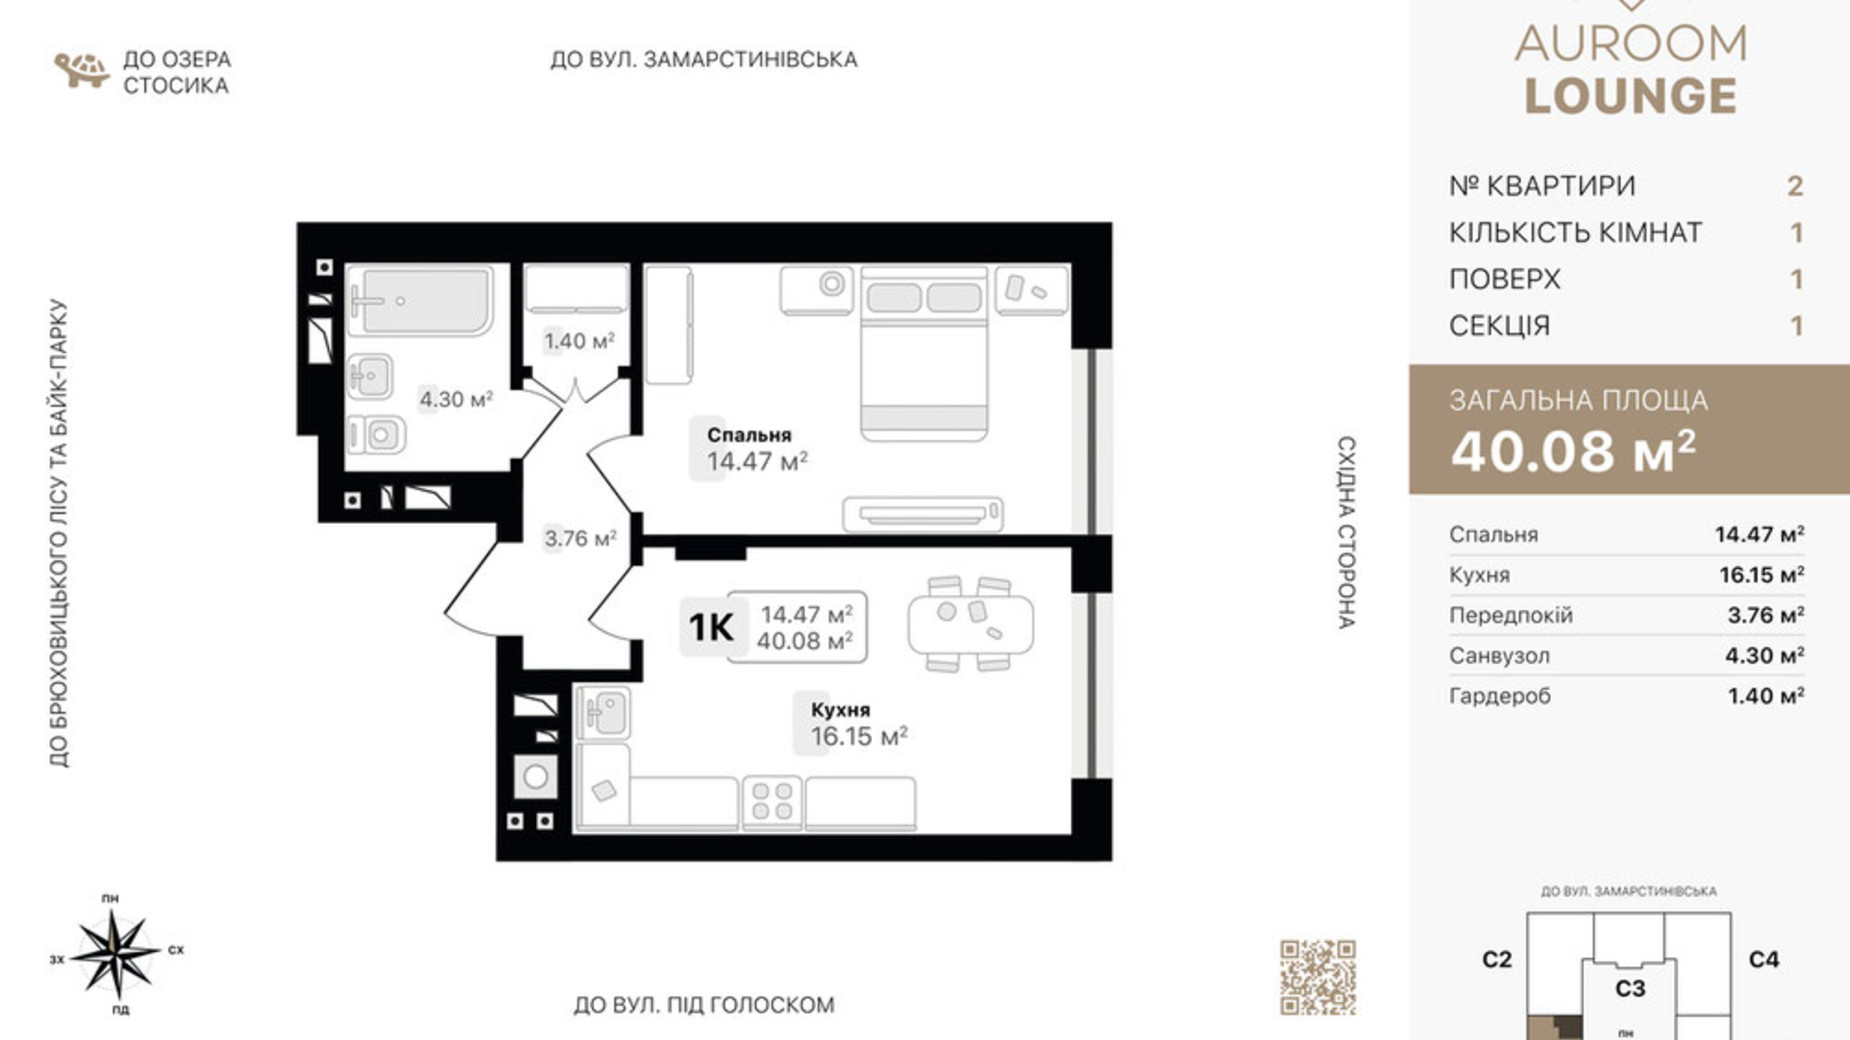 Планировка 1-комнатной квартиры в ЖК Auroom Lounge 40.08 м², фото 720781